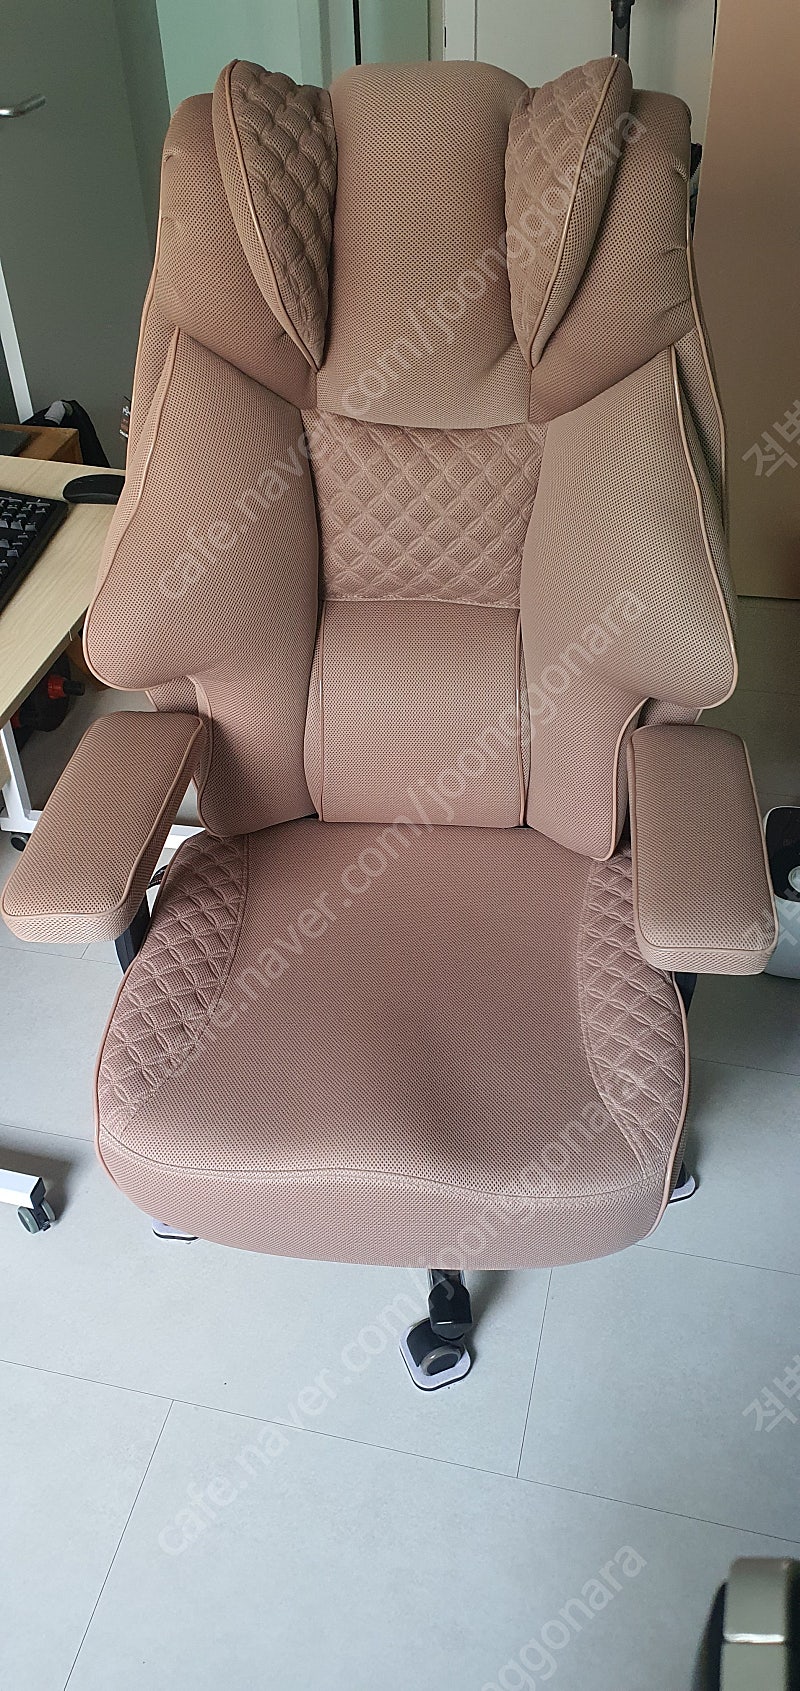 클라우드백 마이사이즈체어 의자 M900MQ 베이지색상 판매합니다.